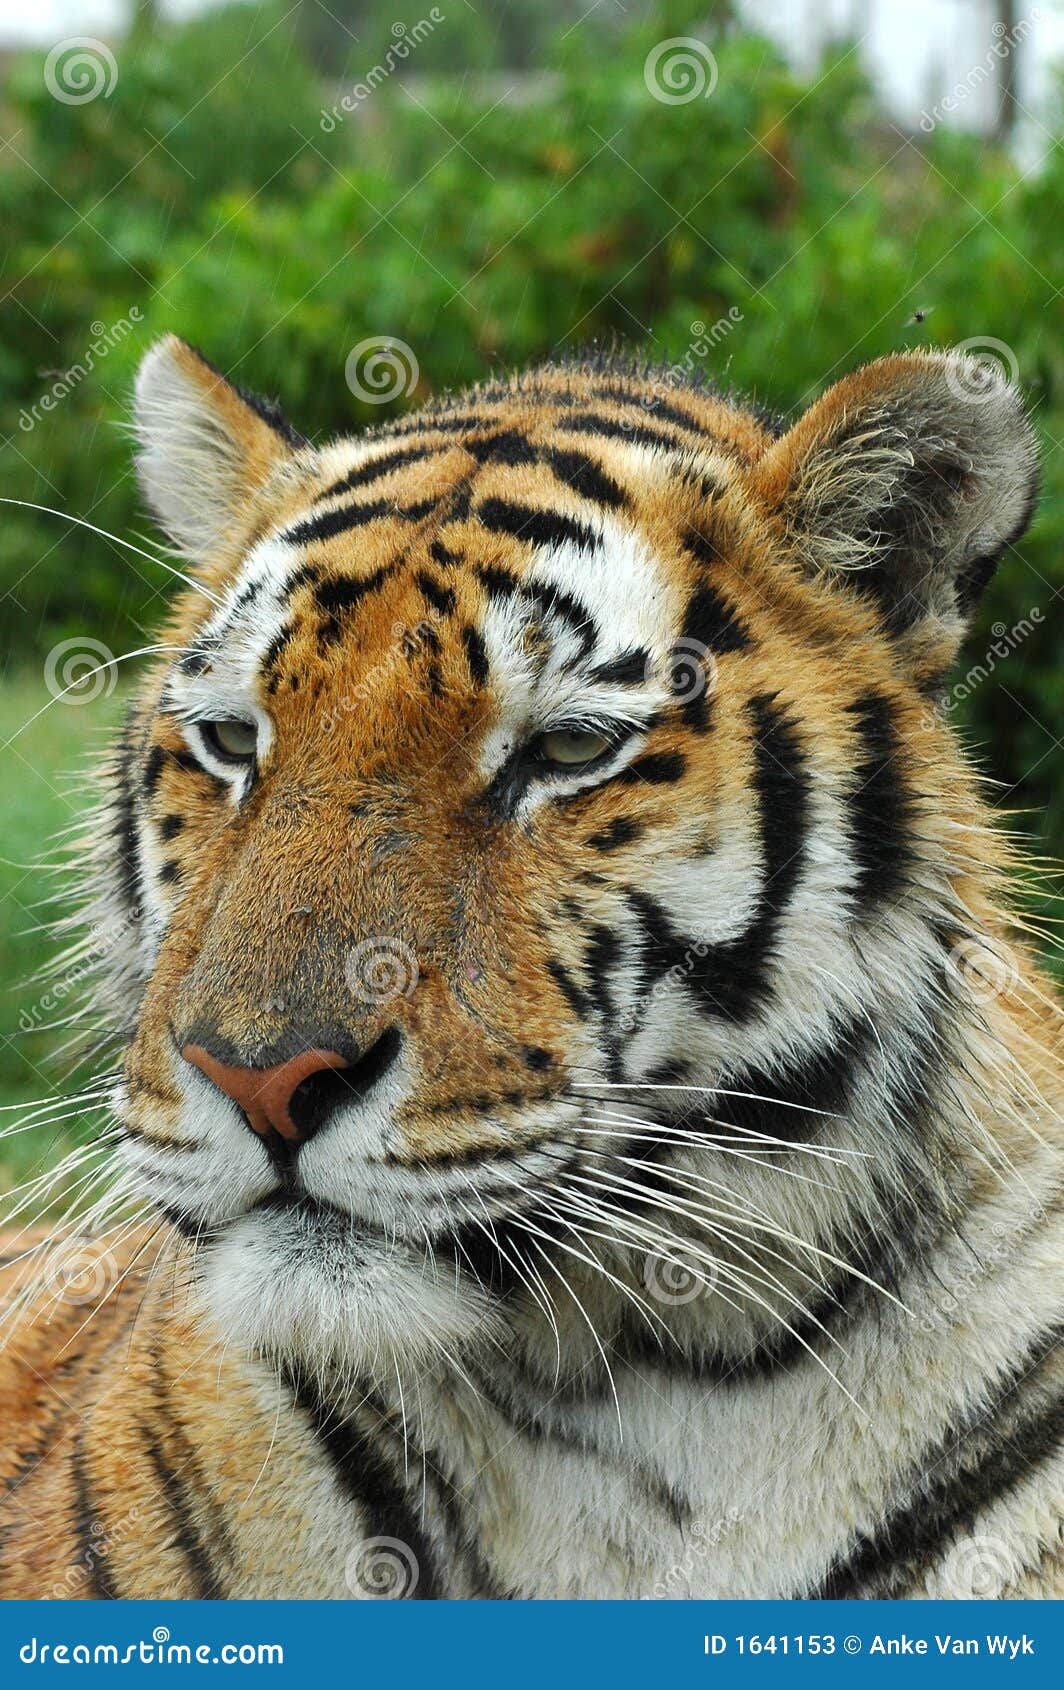 Tiger Face Stock Photos - Image: 1641153